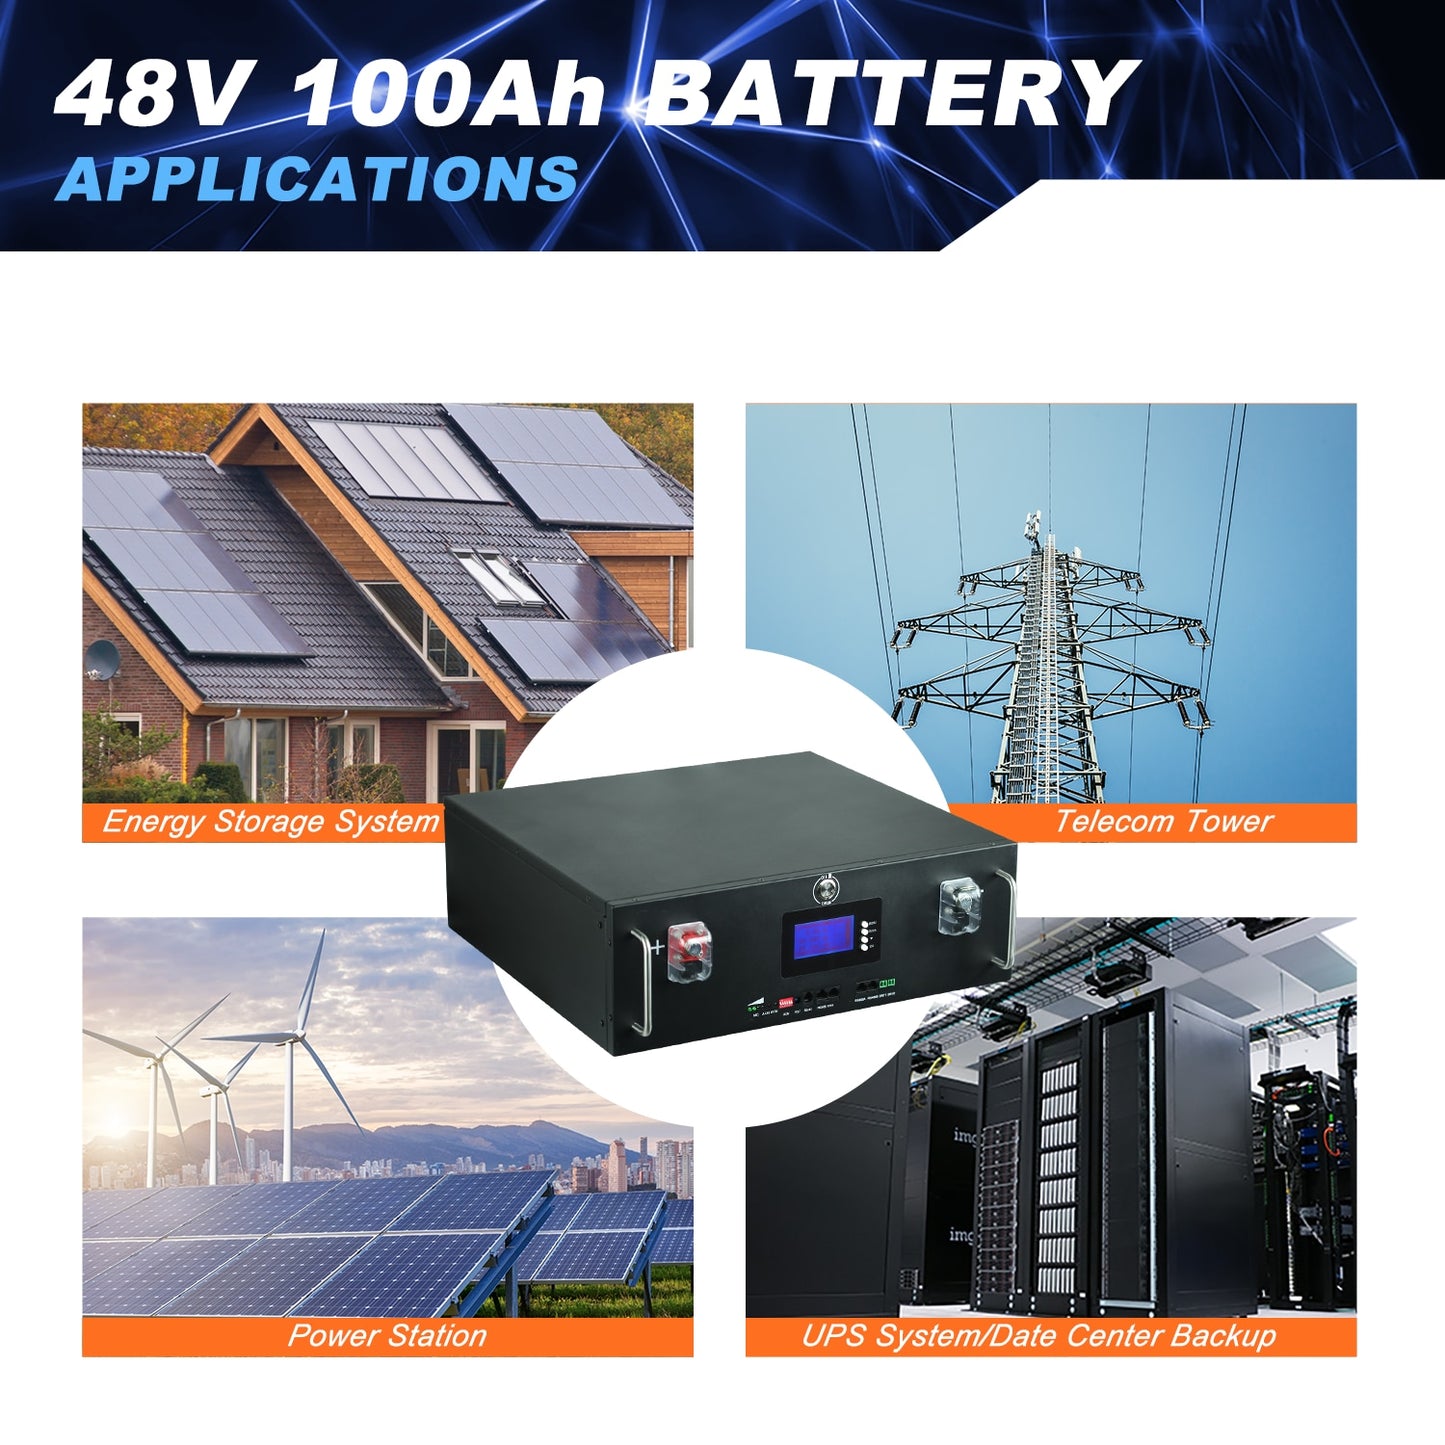 Nuevo paquete de baterías LiFePo4 de 48V 100Ah - 51.2V 5kw Baterías de fosfato de hierro y litio 16S 100A Paquete BMS 48V incorporado para energía solar sin impuestos